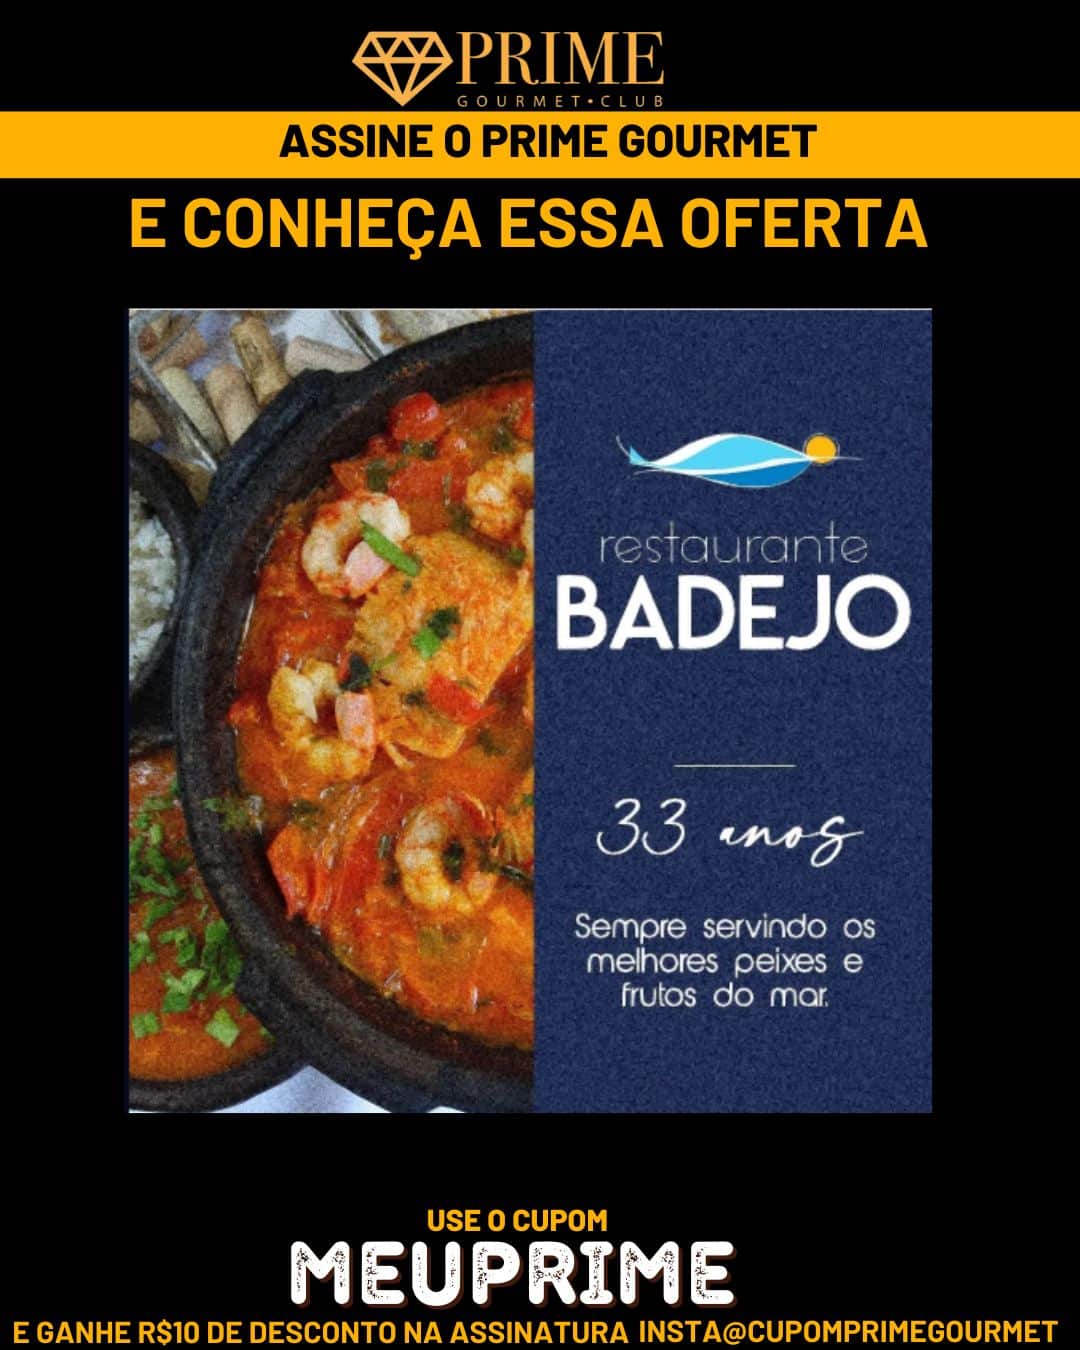 Imagem promocional para assinar Prime Gourmet Badejo